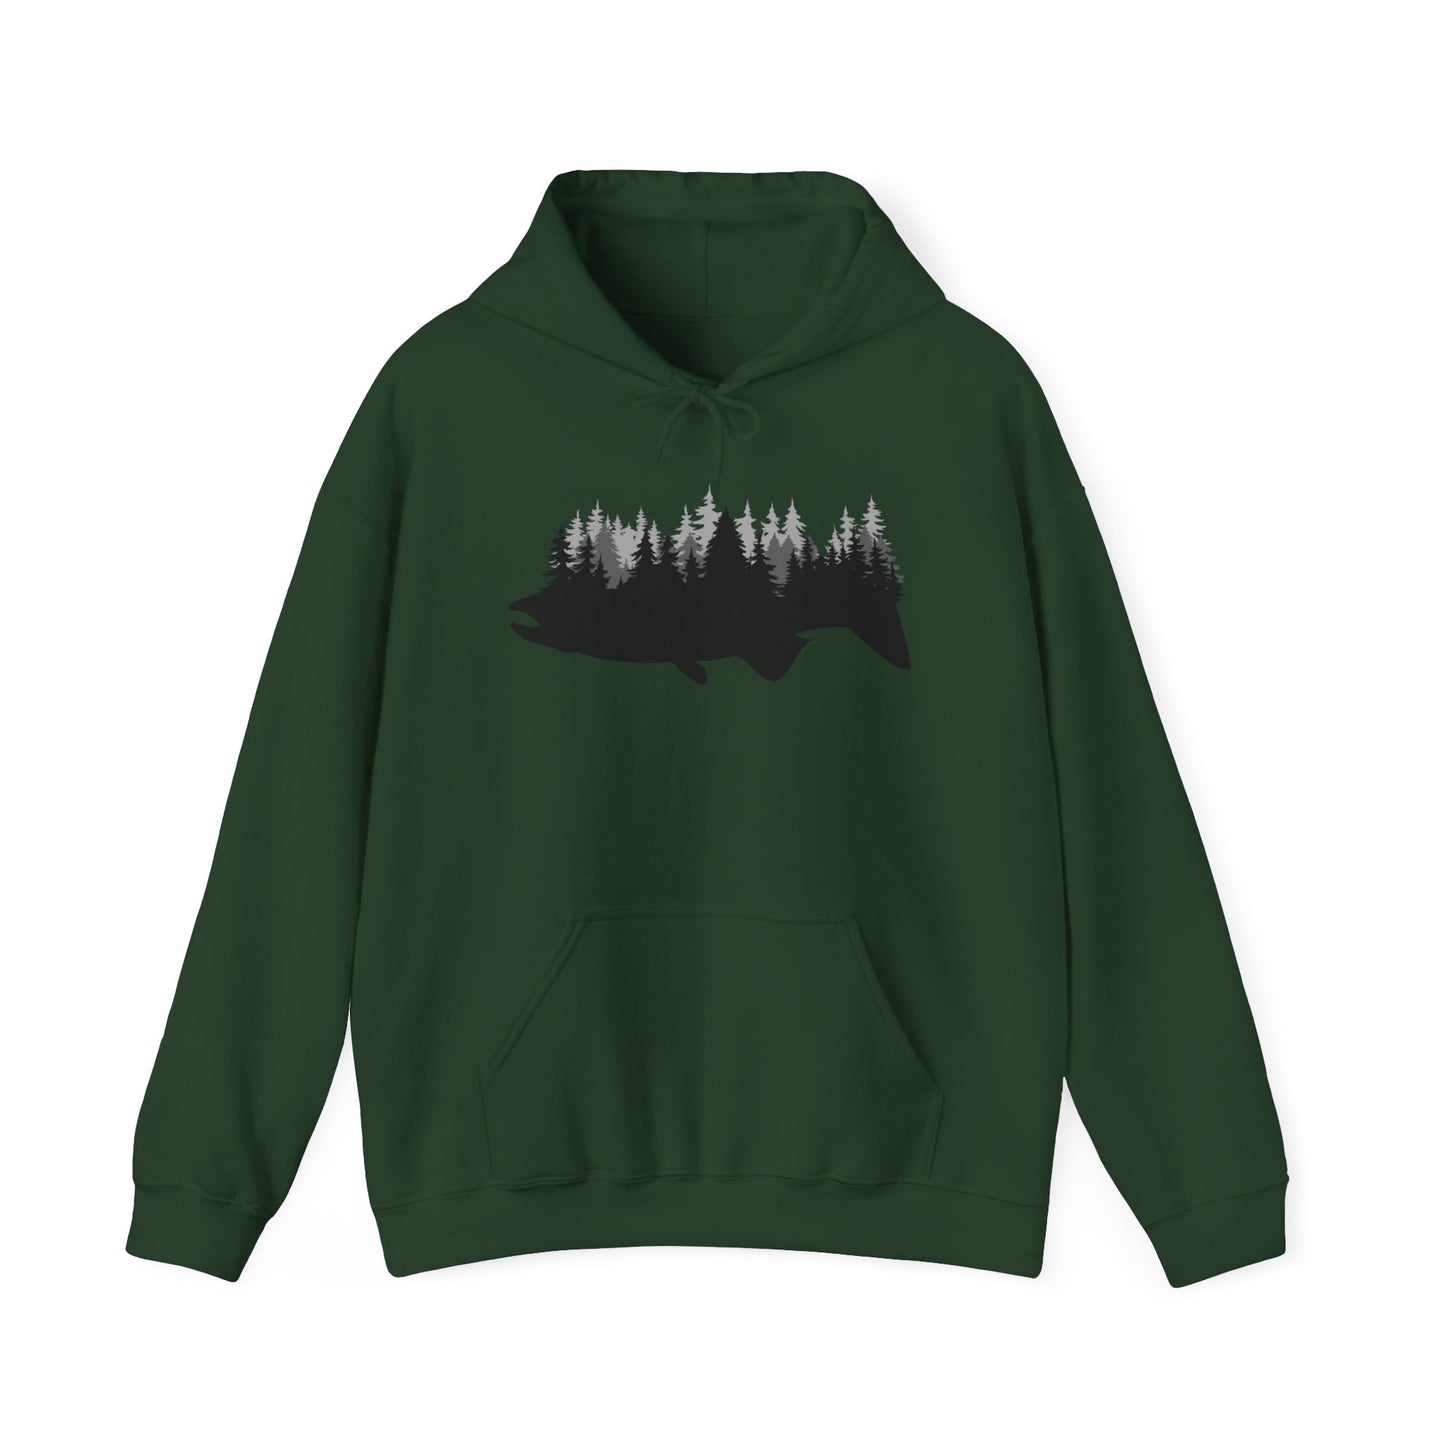 Fishing Hooded Sweatshirt For Angler Hoodie